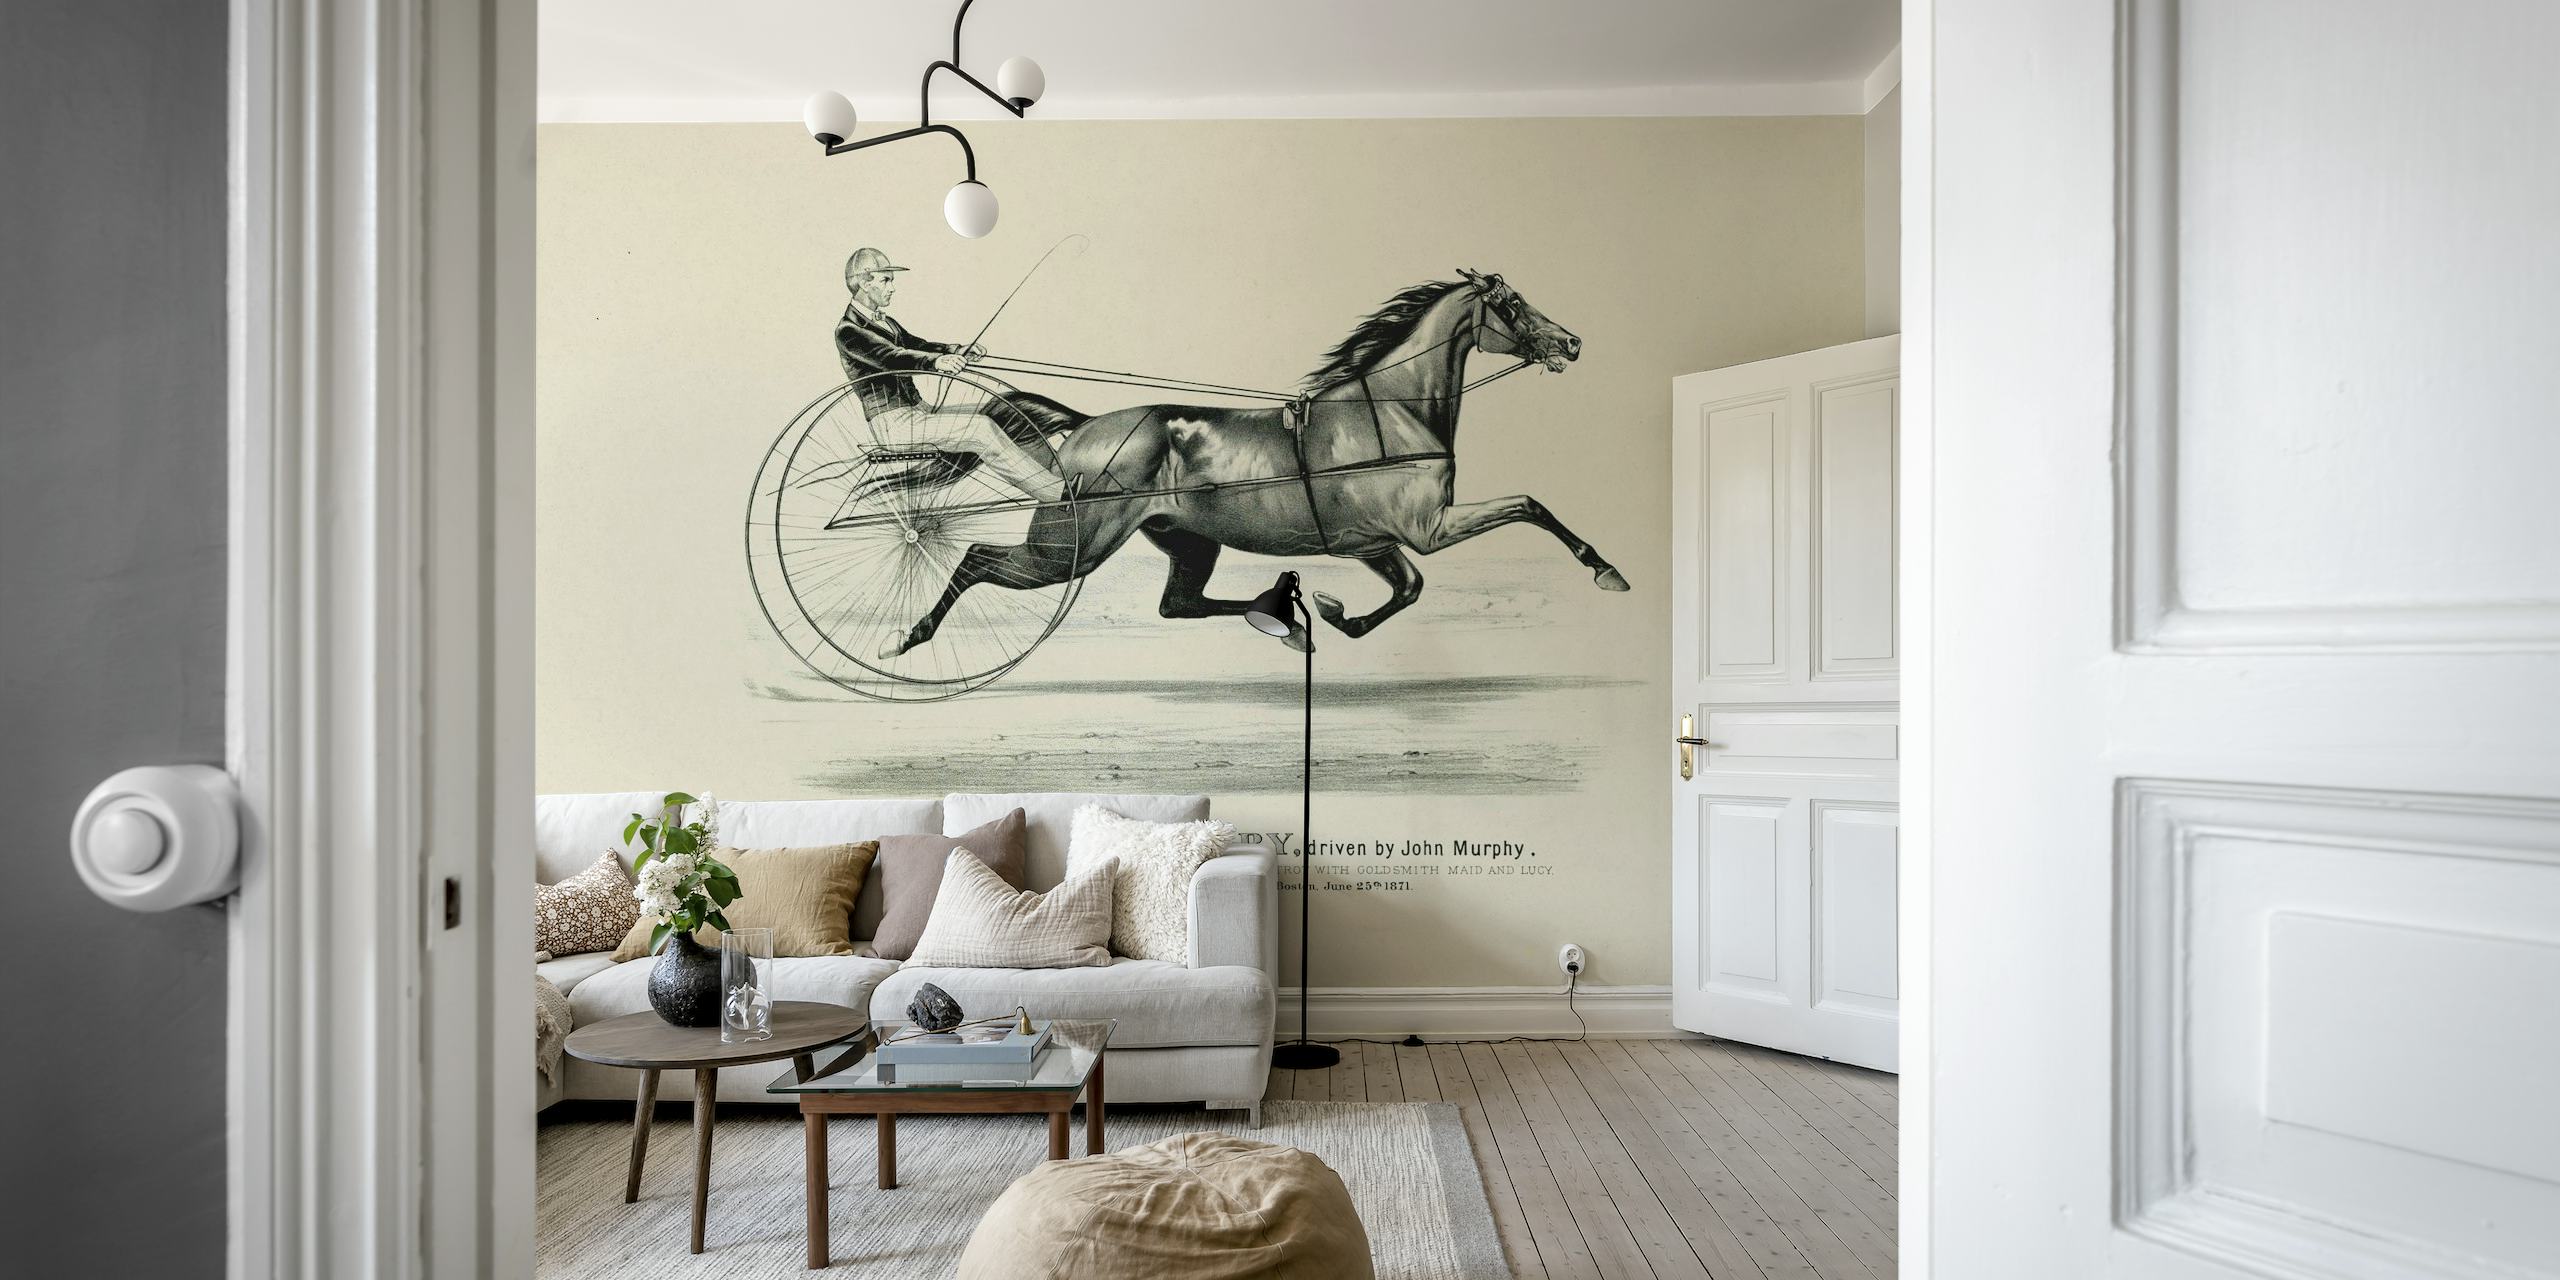 Historiallinen ratsastustaidetta kuvaava seinämaalaus, joka kuvaa hevosta ja ratsastajaa klassiseen tyyliin.